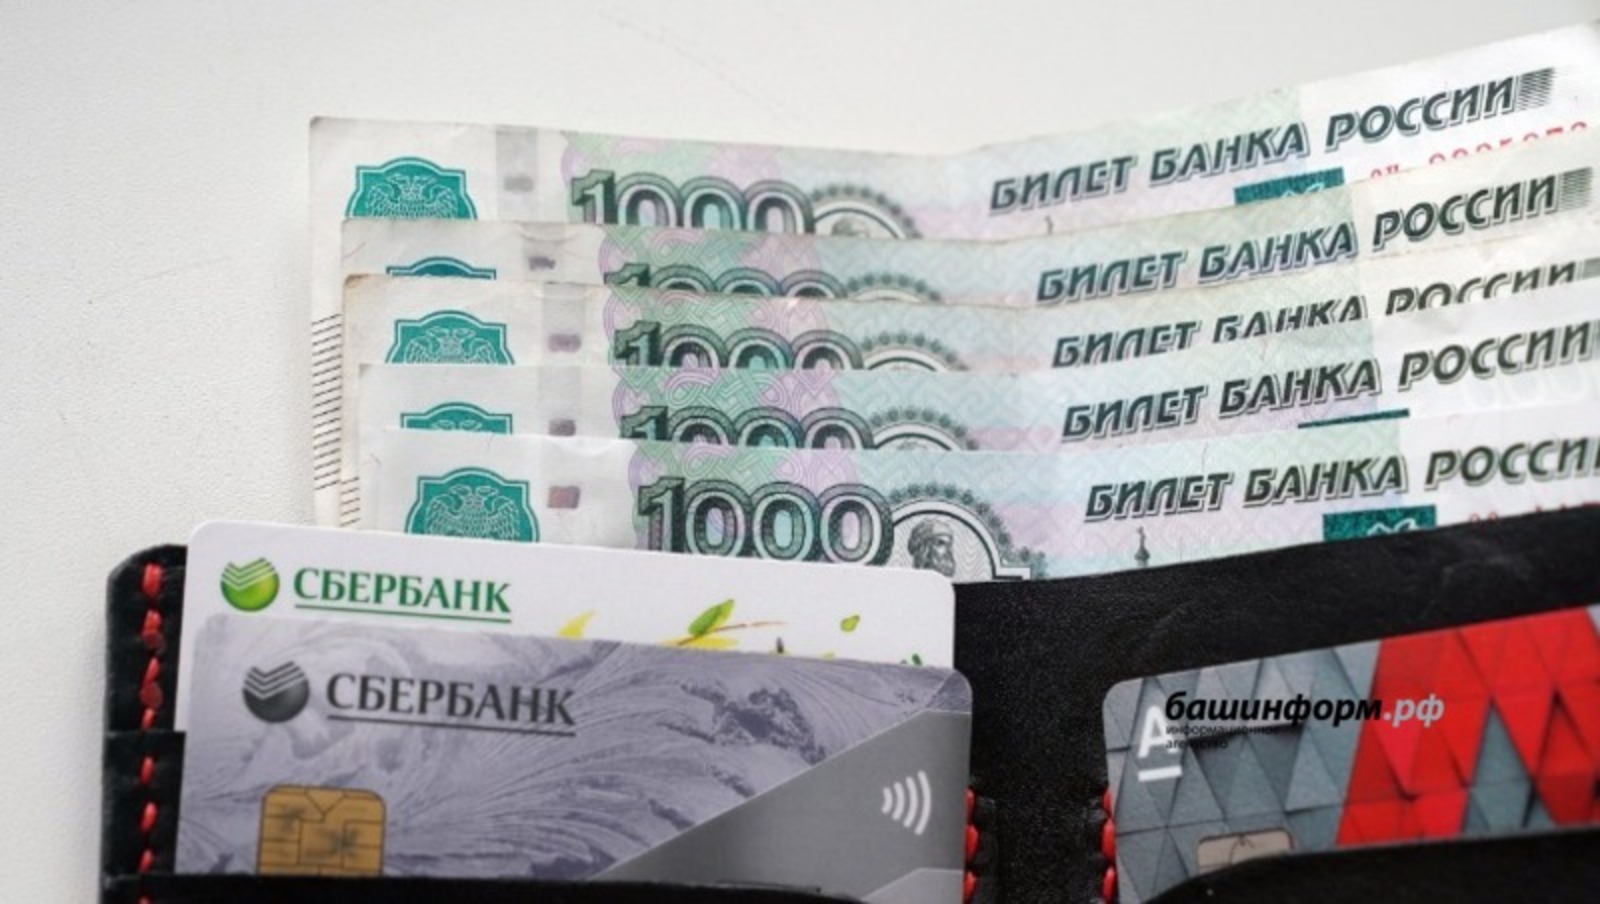 Финансовый омбудсмен Башкирии Валерий Шарипов рассказал, что делать с накоплениями